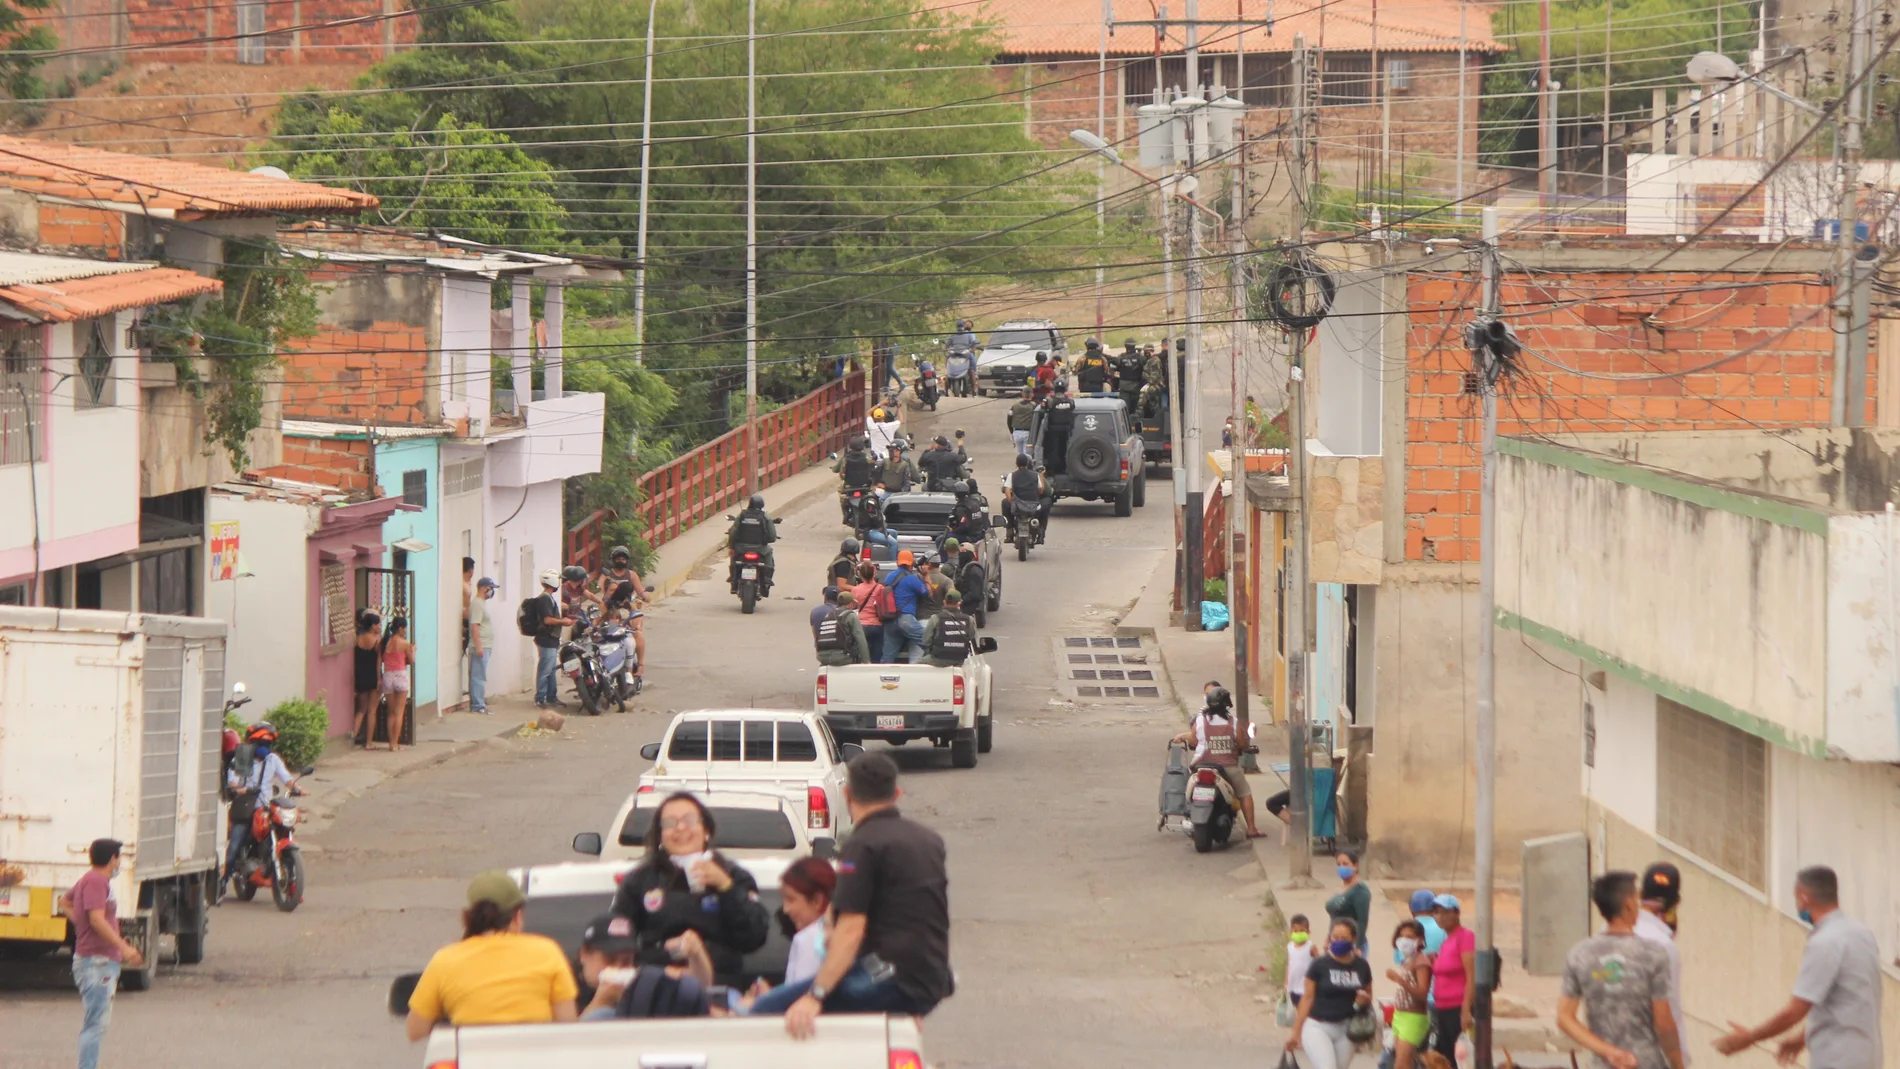 Maduro llama "irresponsables" a venezolanos que retornan por pasos ilegales